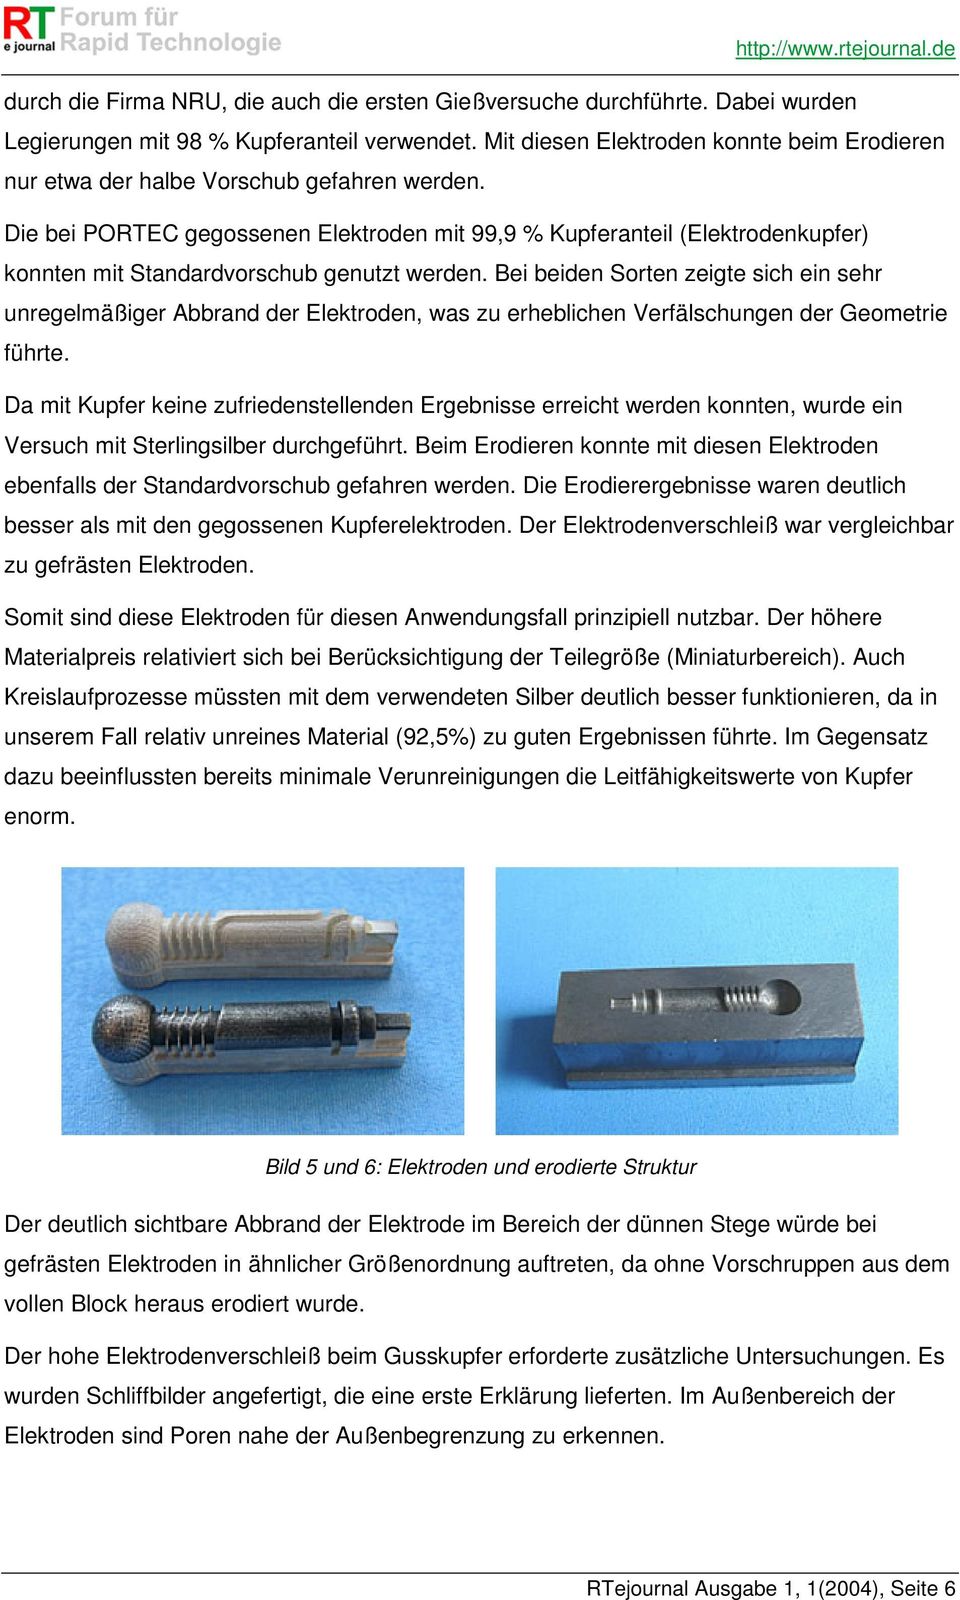 Die bei PORTEC gegossenen Elektroden mit 99,9 % Kupferanteil (Elektrodenkupfer) konnten mit Standardvorschub genutzt werden.